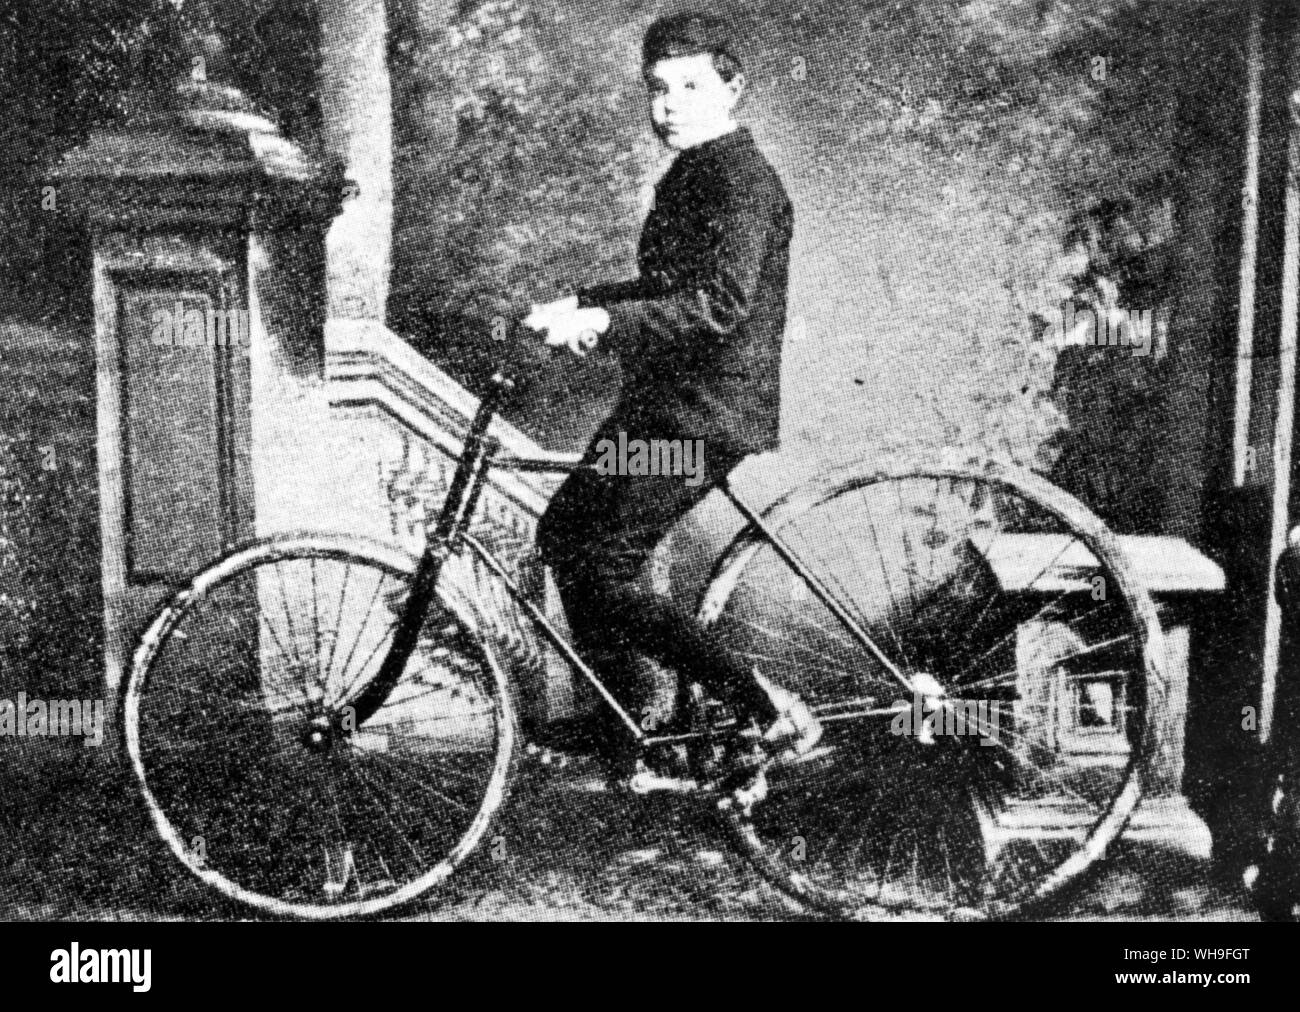 Johnnie Dunlop sul suo Edlin bicicletta. (Figlio di John Boyd Dunlop, che ha fondato la società di gomma che porta il suo nome) pneumatici. Foto Stock